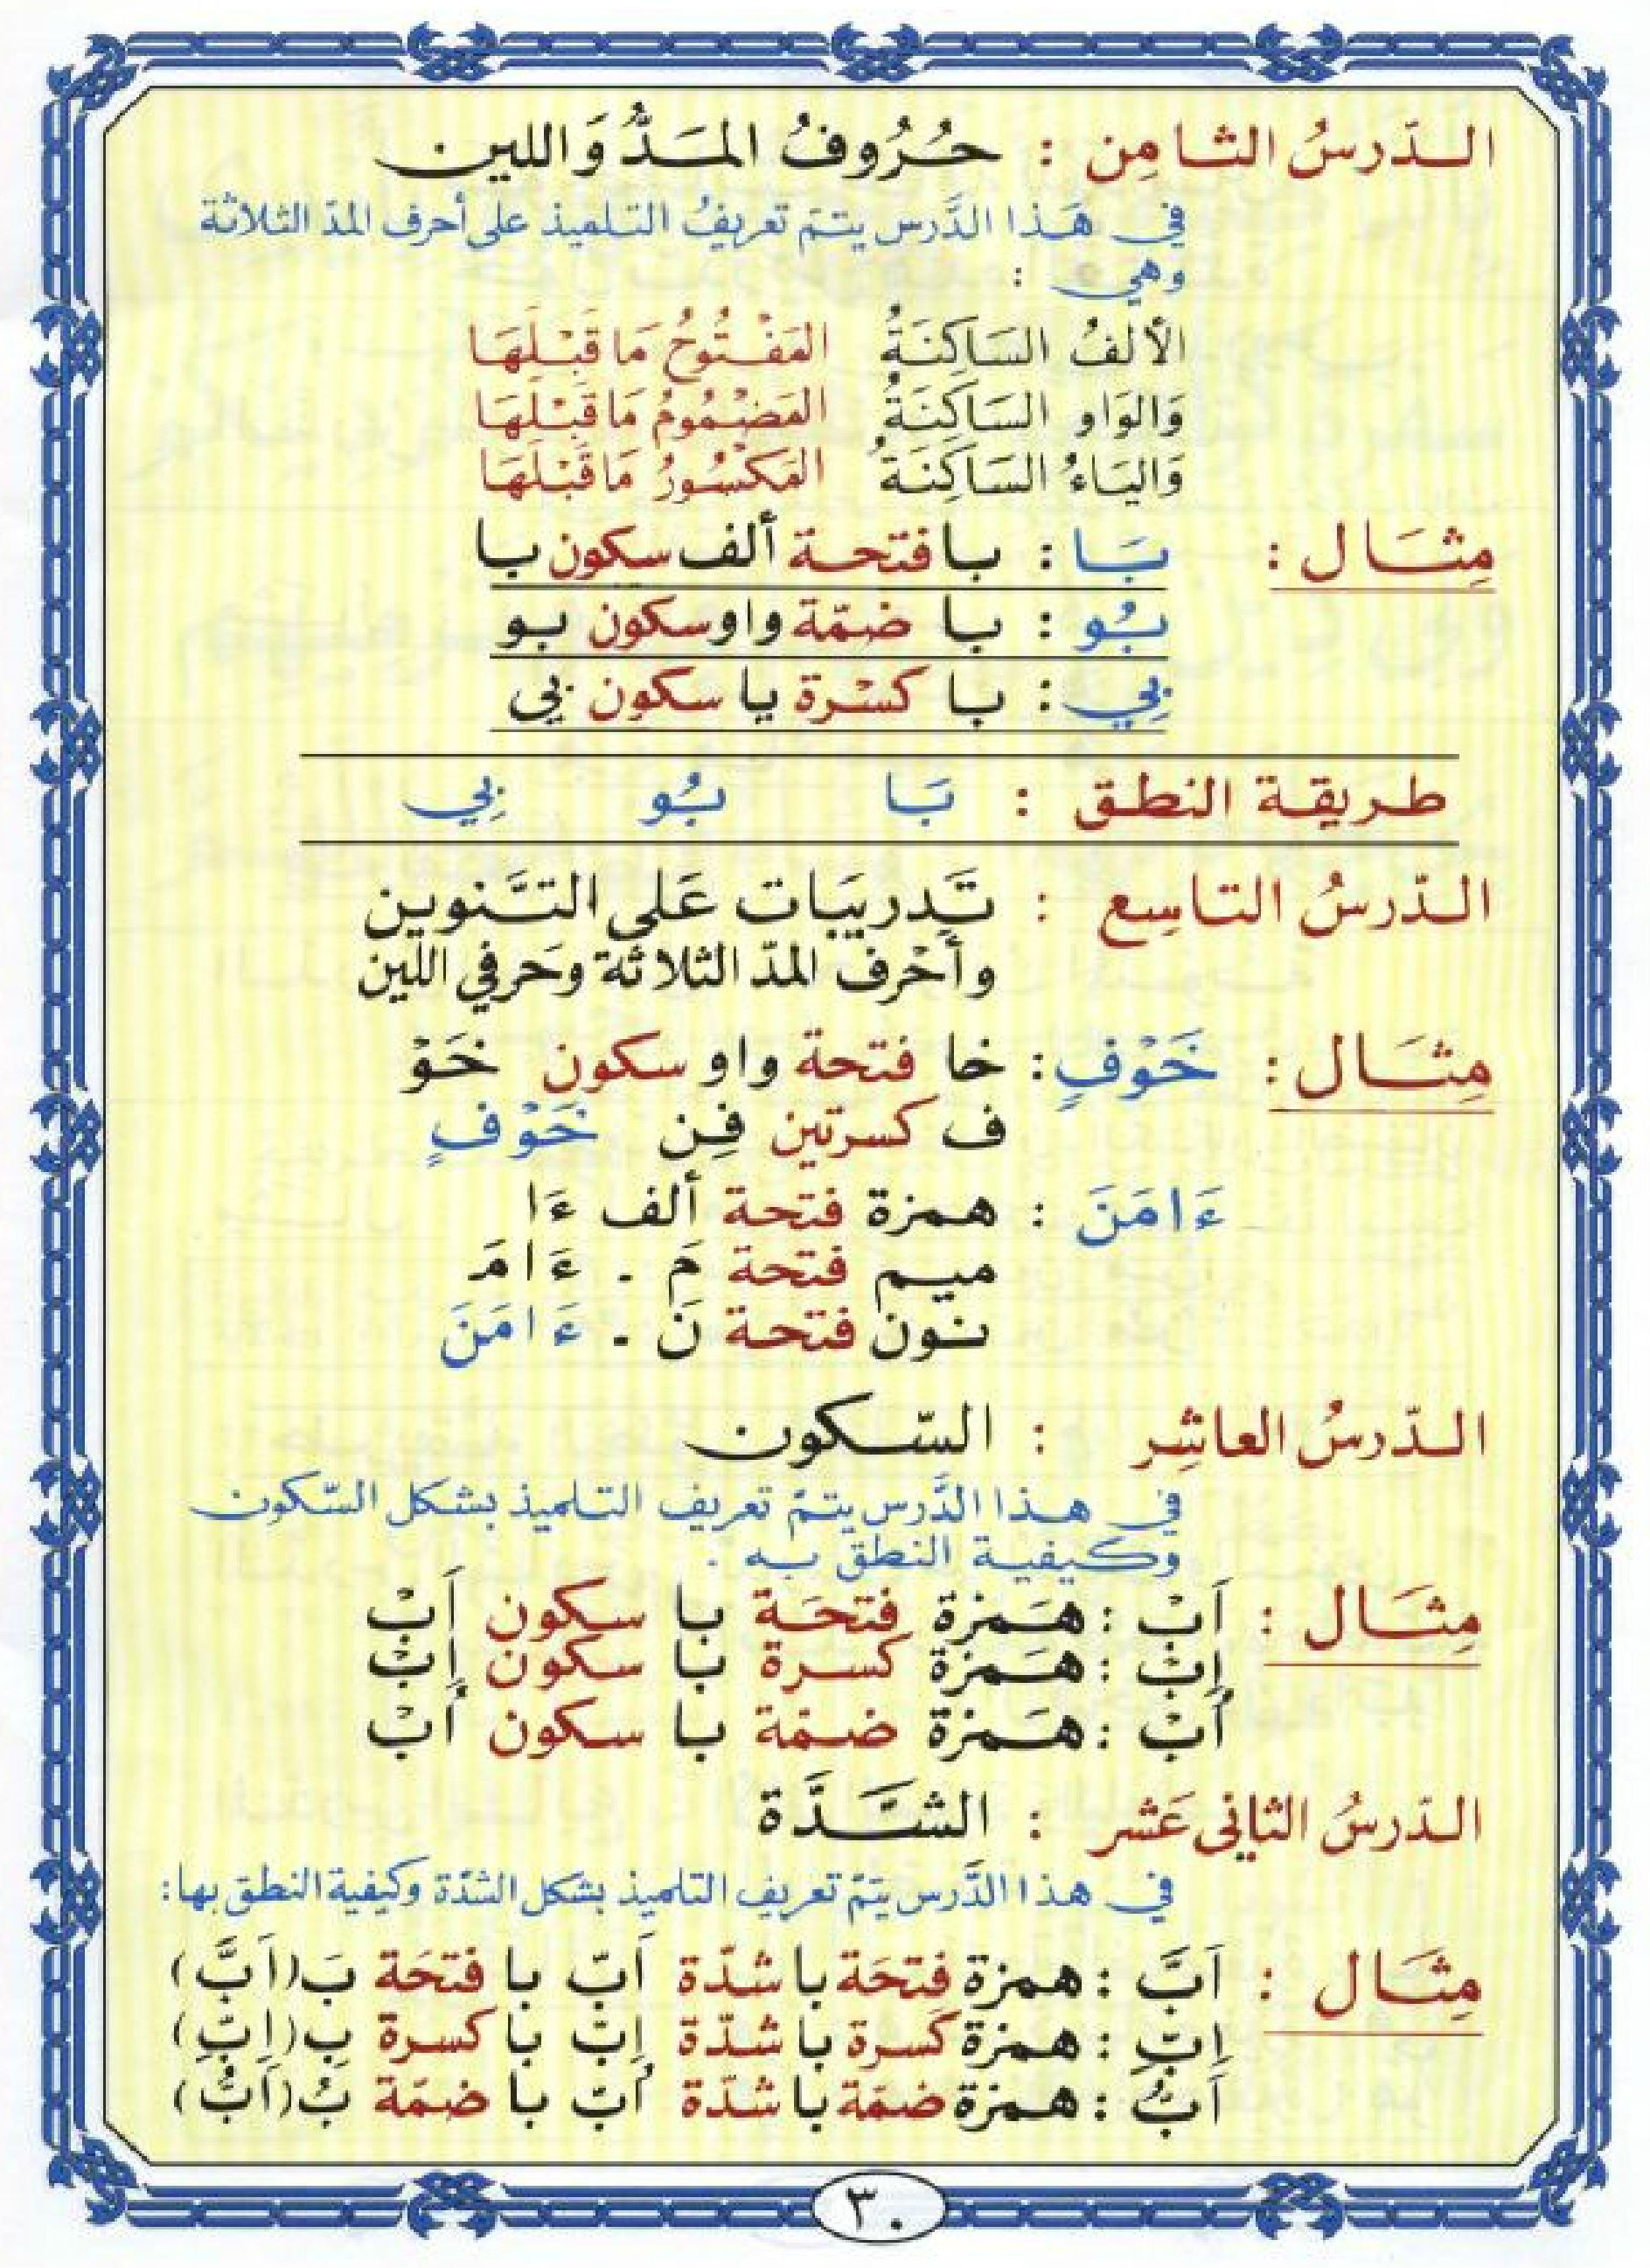 Noorani Qaida in Arabic